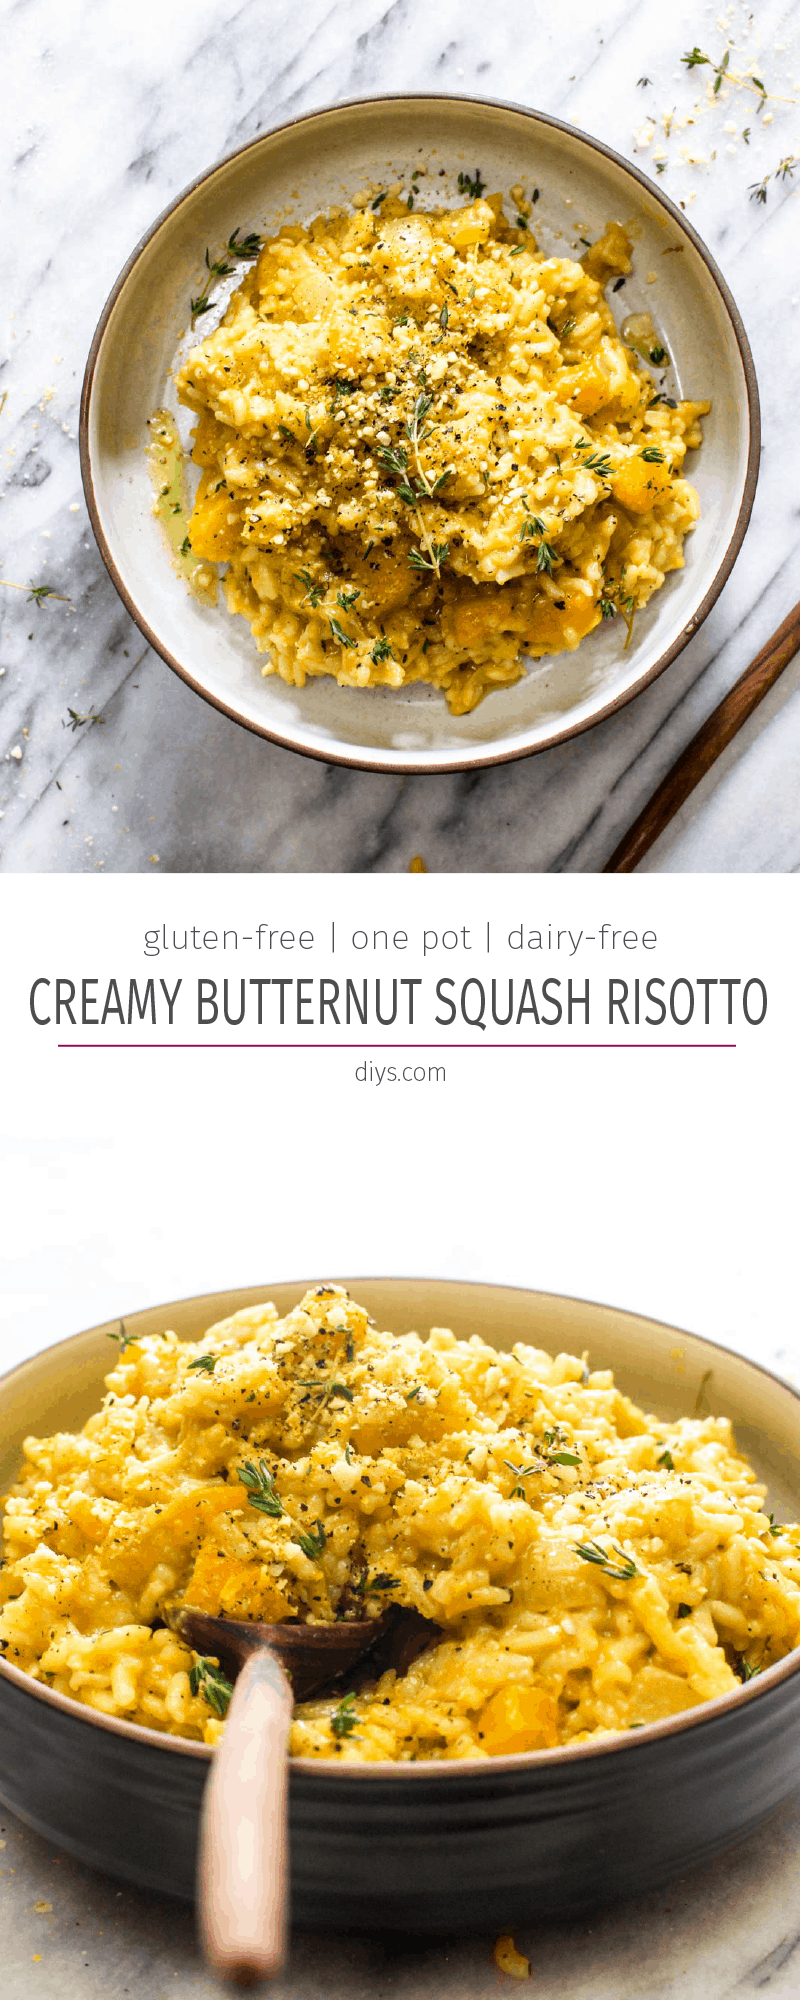 Butternut squash risotto delicious